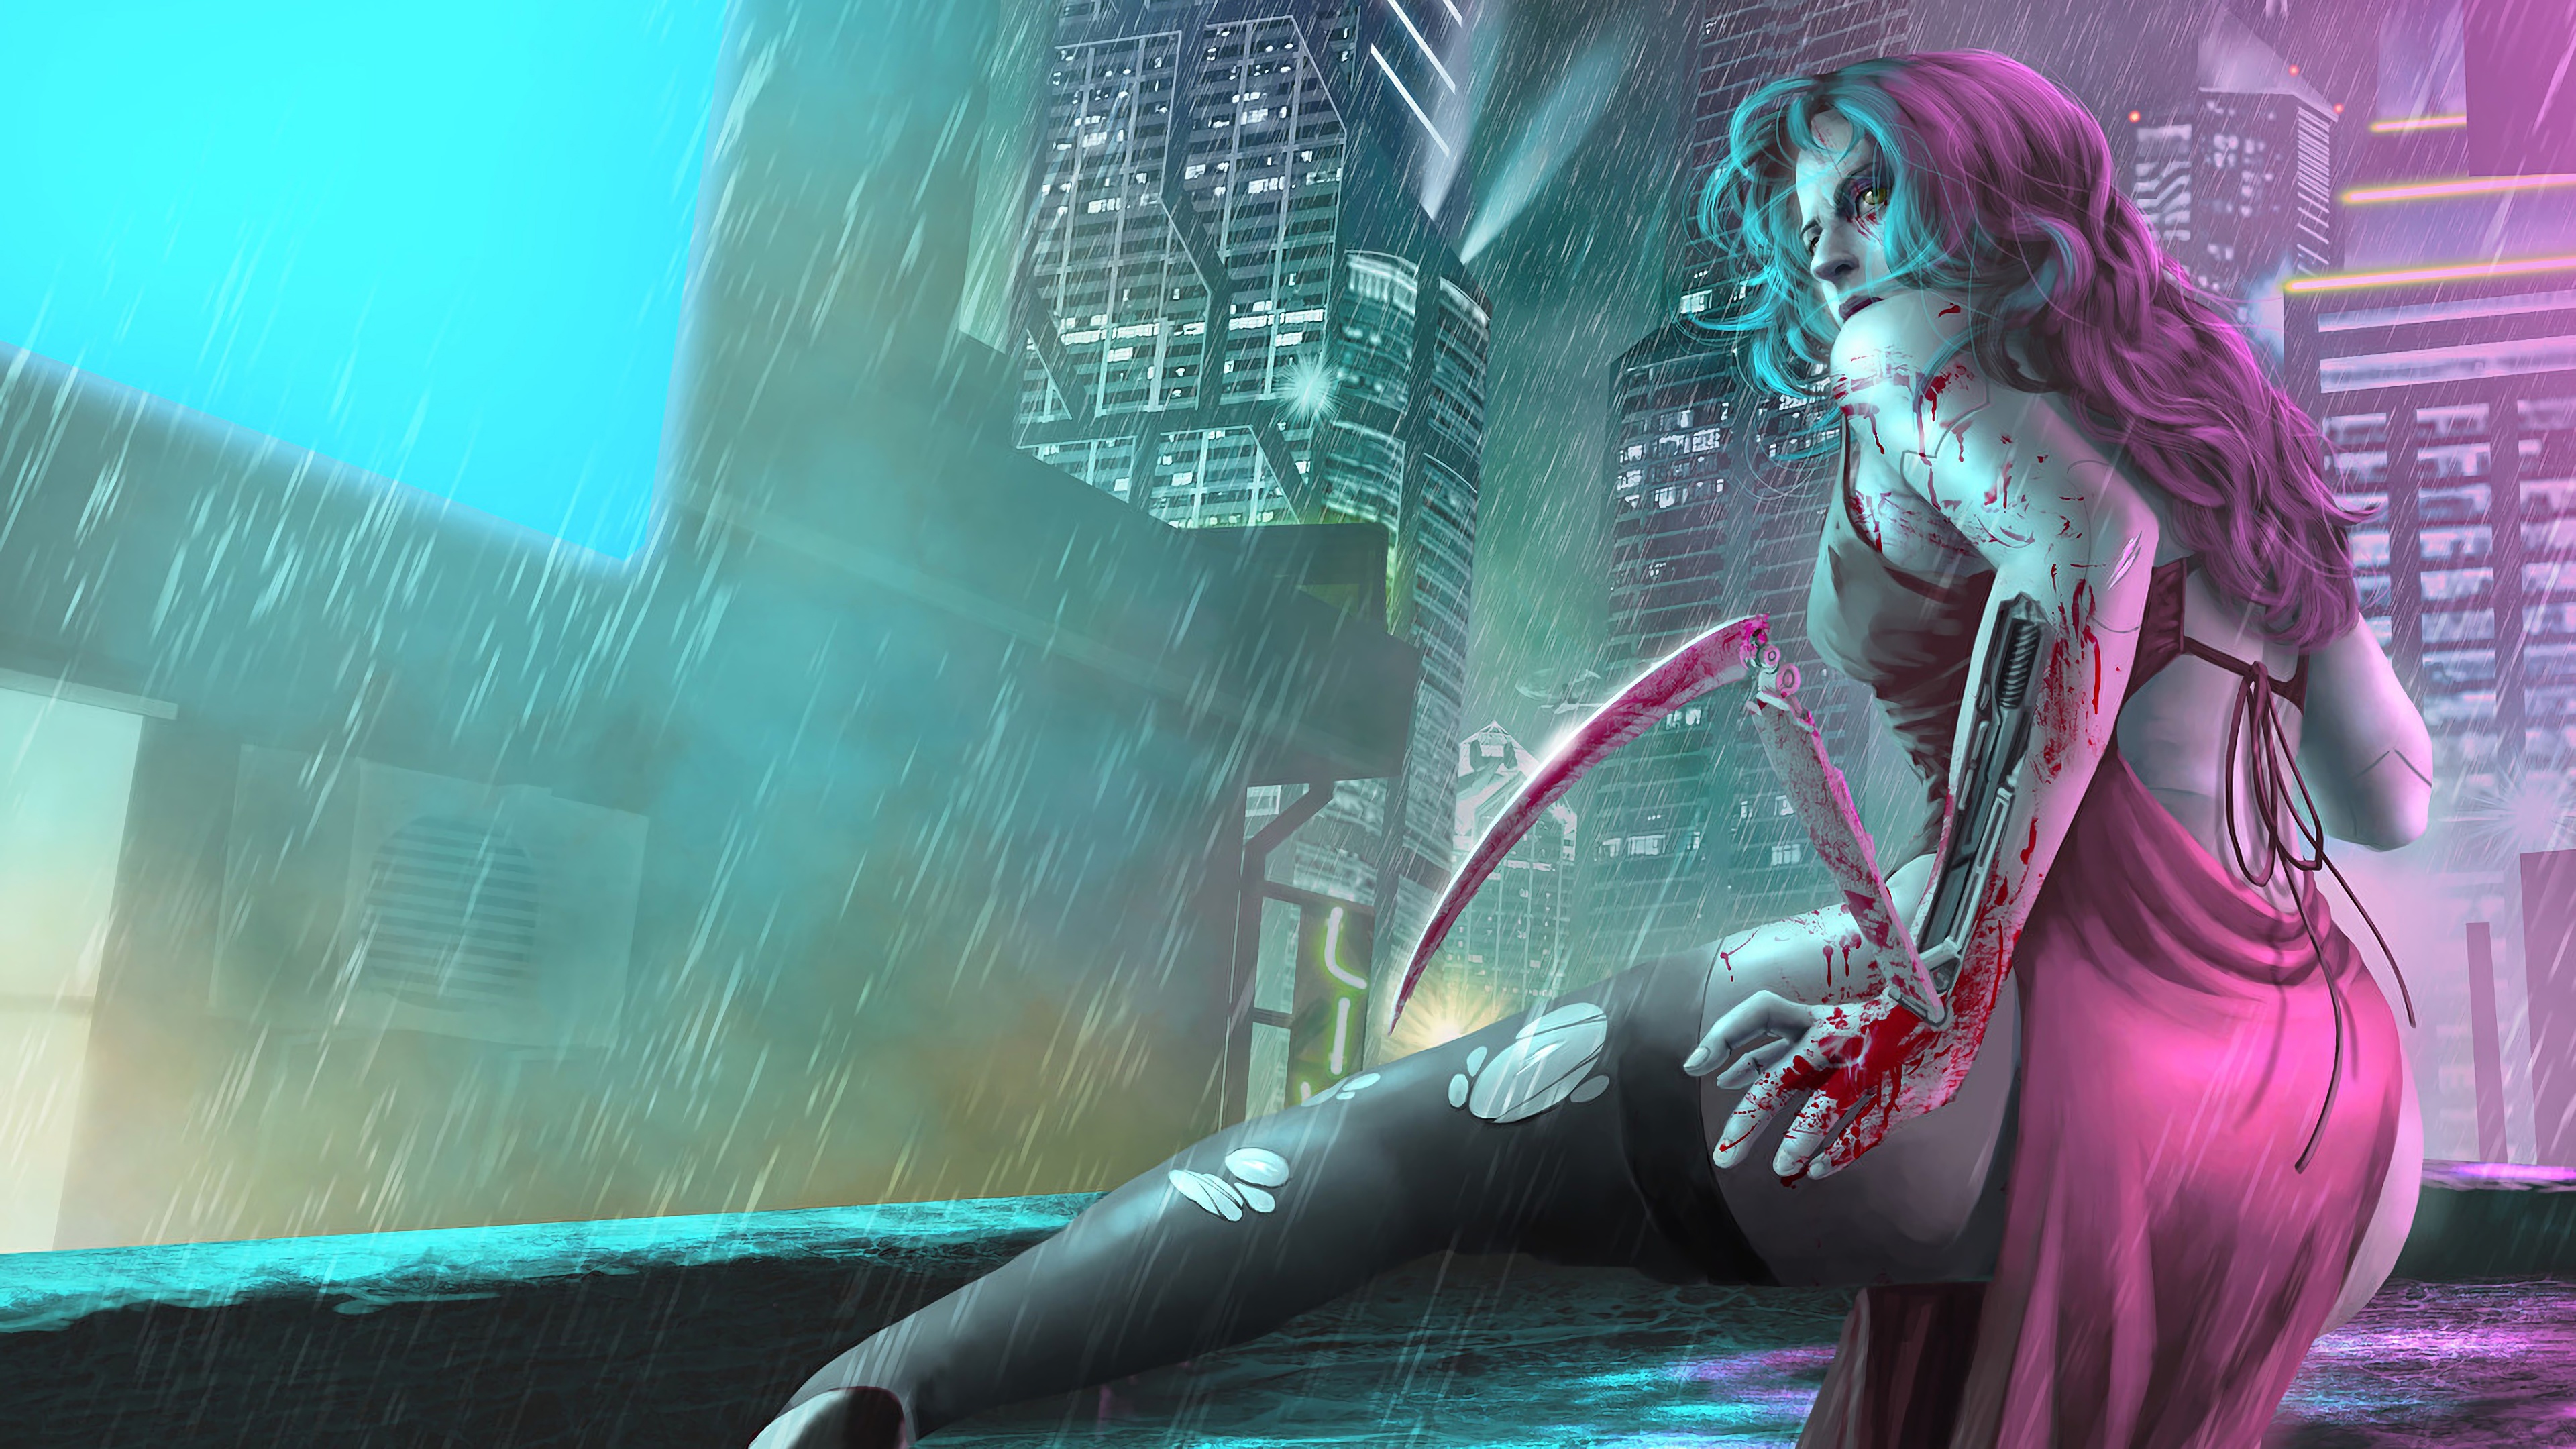 Cyberpunk 2077 Cyborg Girl 4k Backround - Cyberpunk 2077 ...